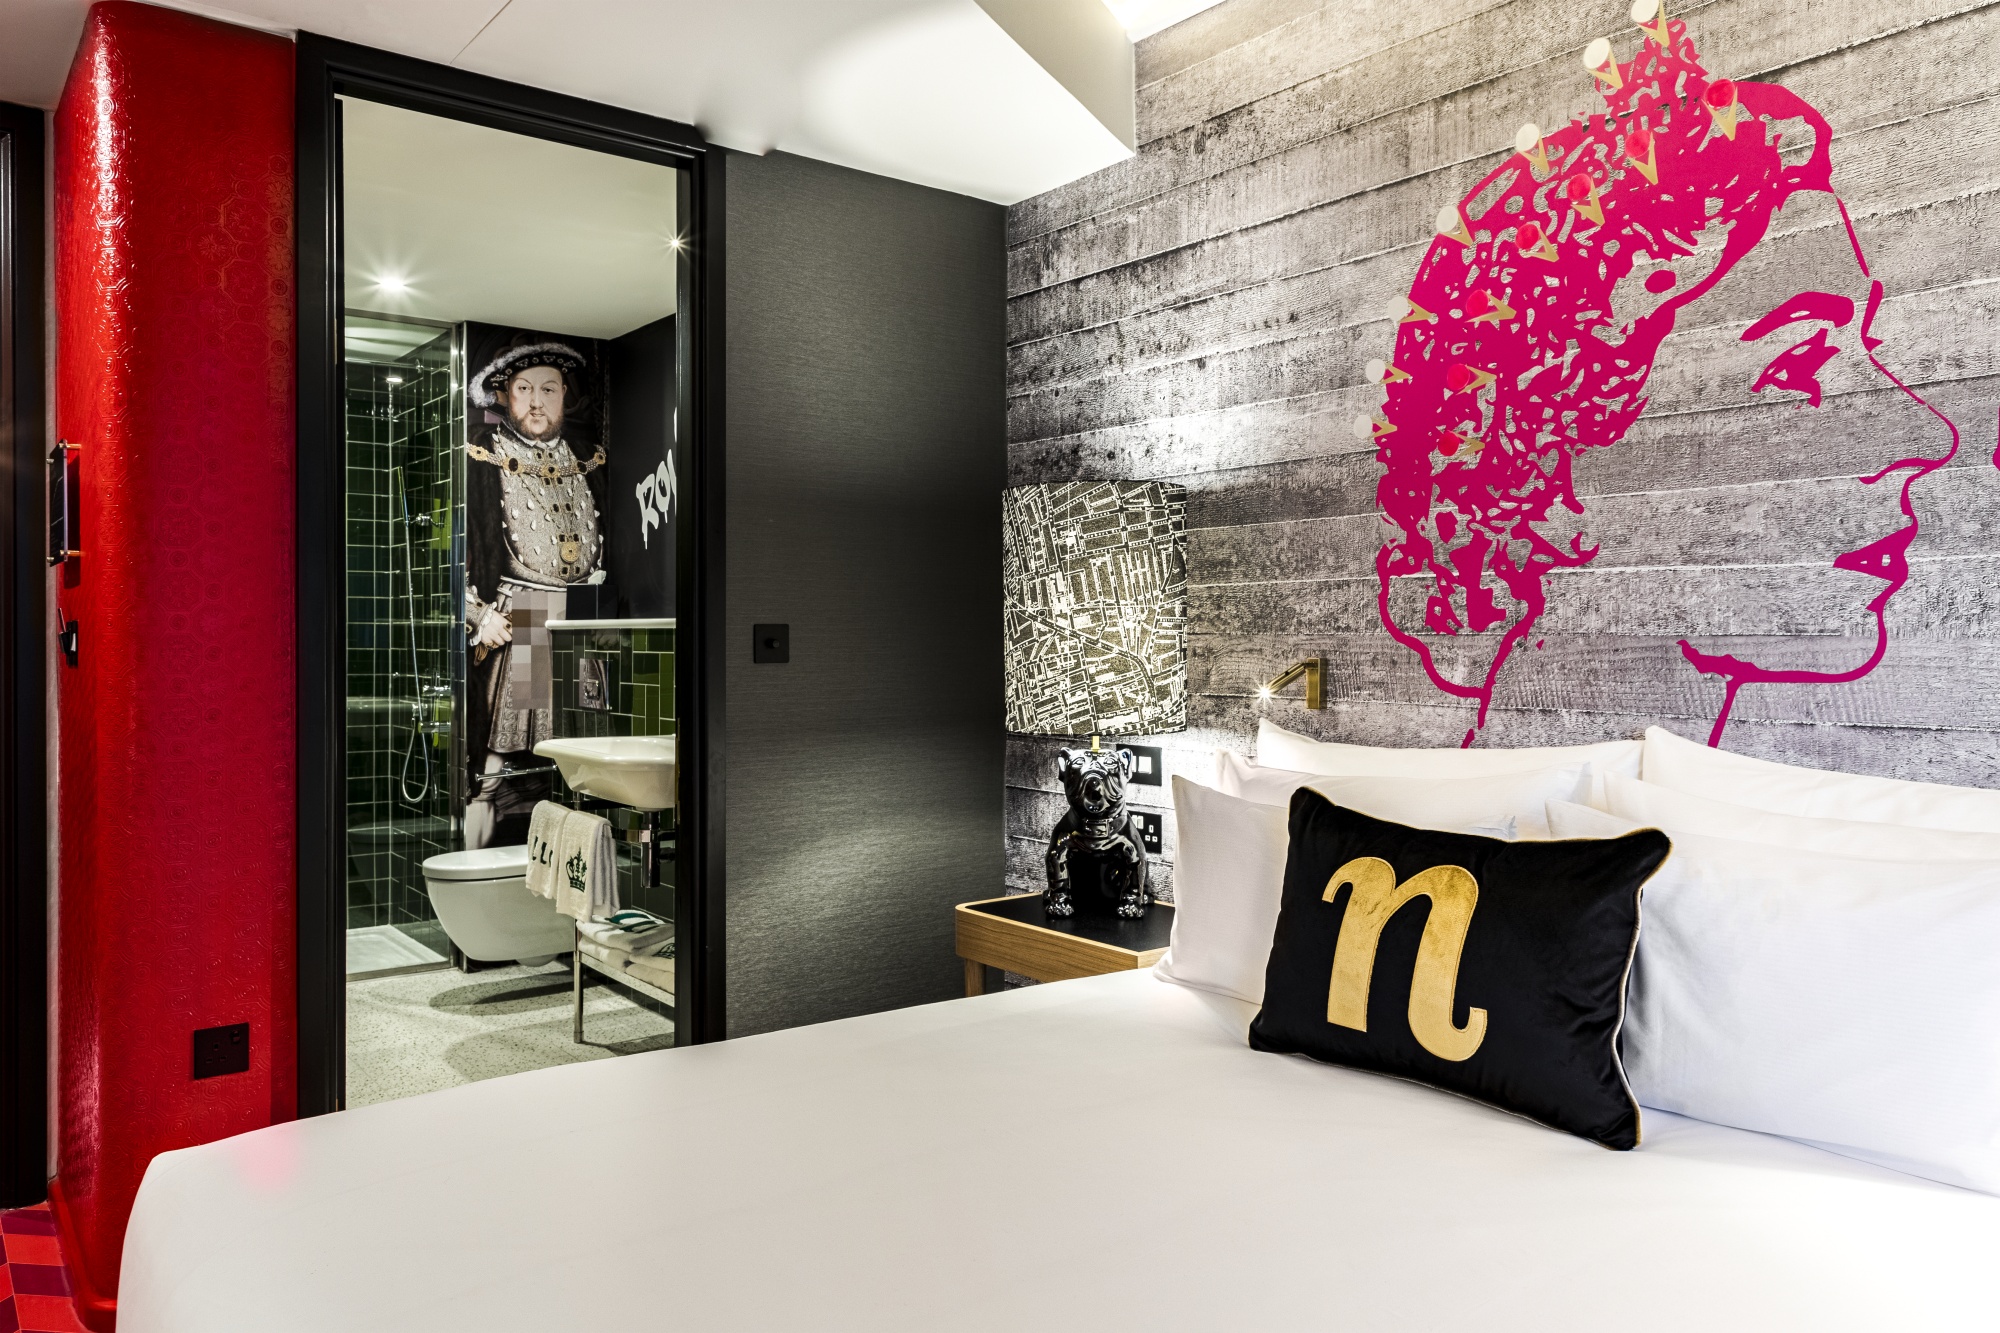 Экстерьер отеля Nhow London, демонстрирующий современный дизайн с элементами индустриального стиля